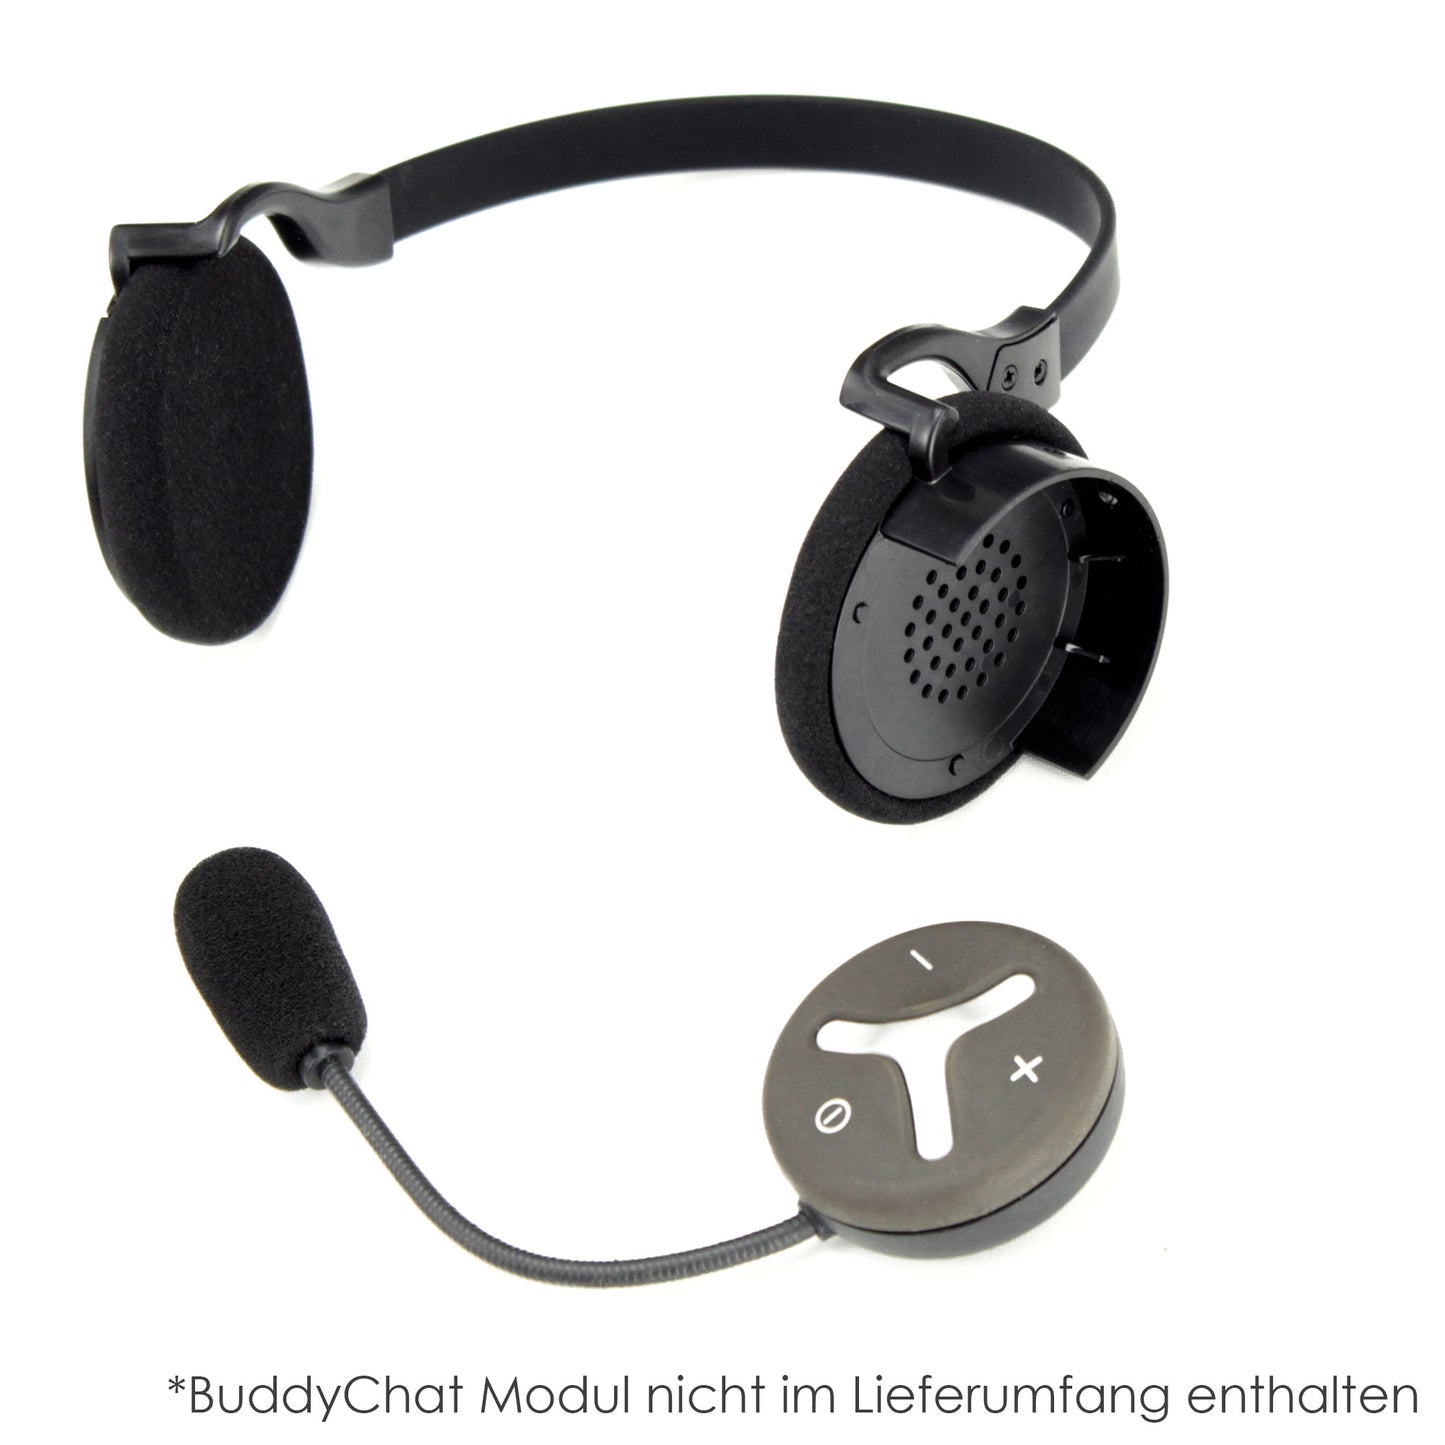 Headset Nacken-Halter für Buddy Chat Modul